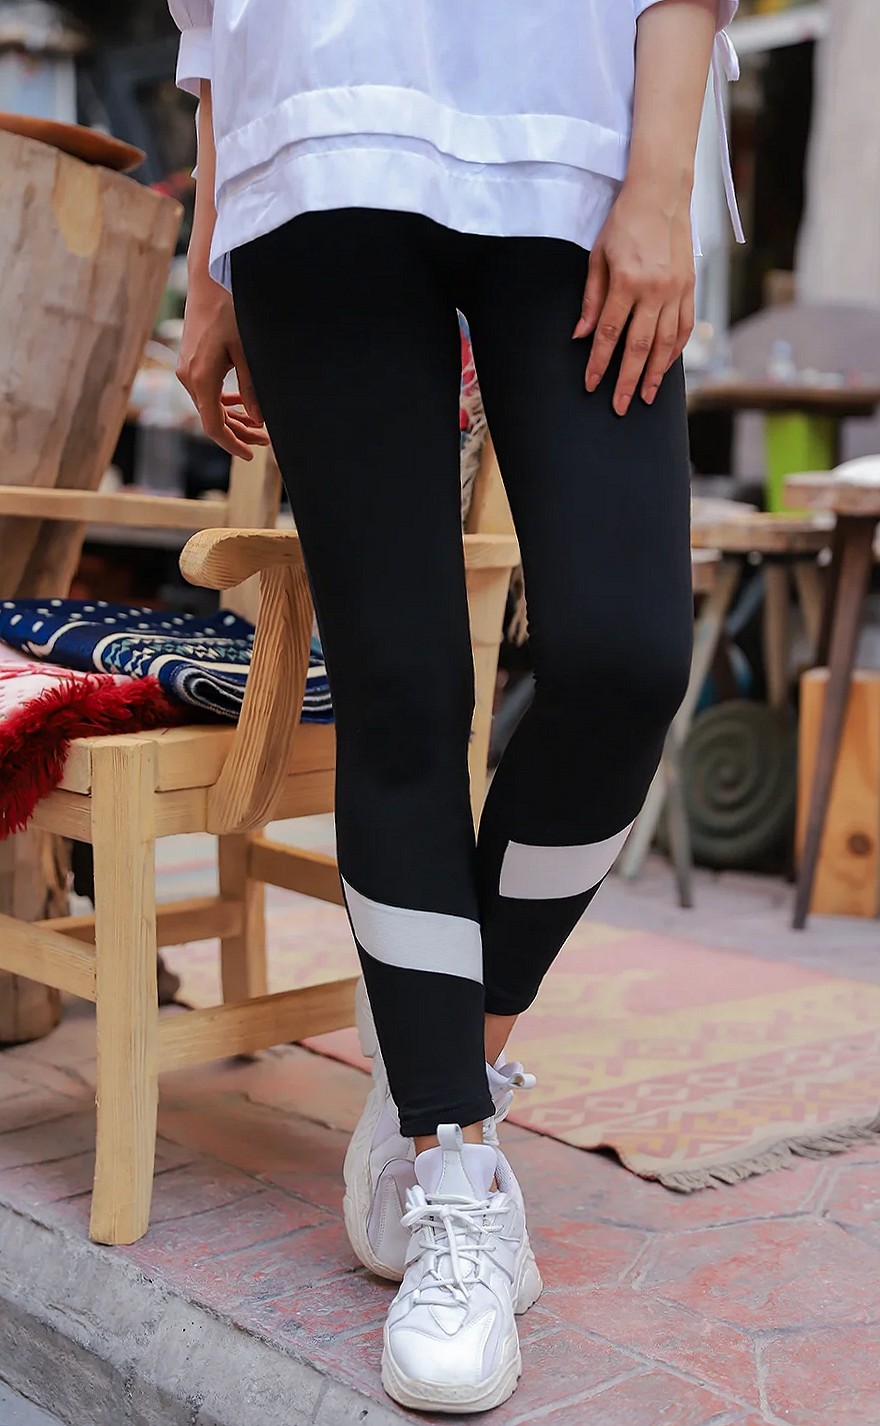 Legging sport pour femme - Pantalon moulant à bande - Couleur Noir - Prêt à  porter et accessoires